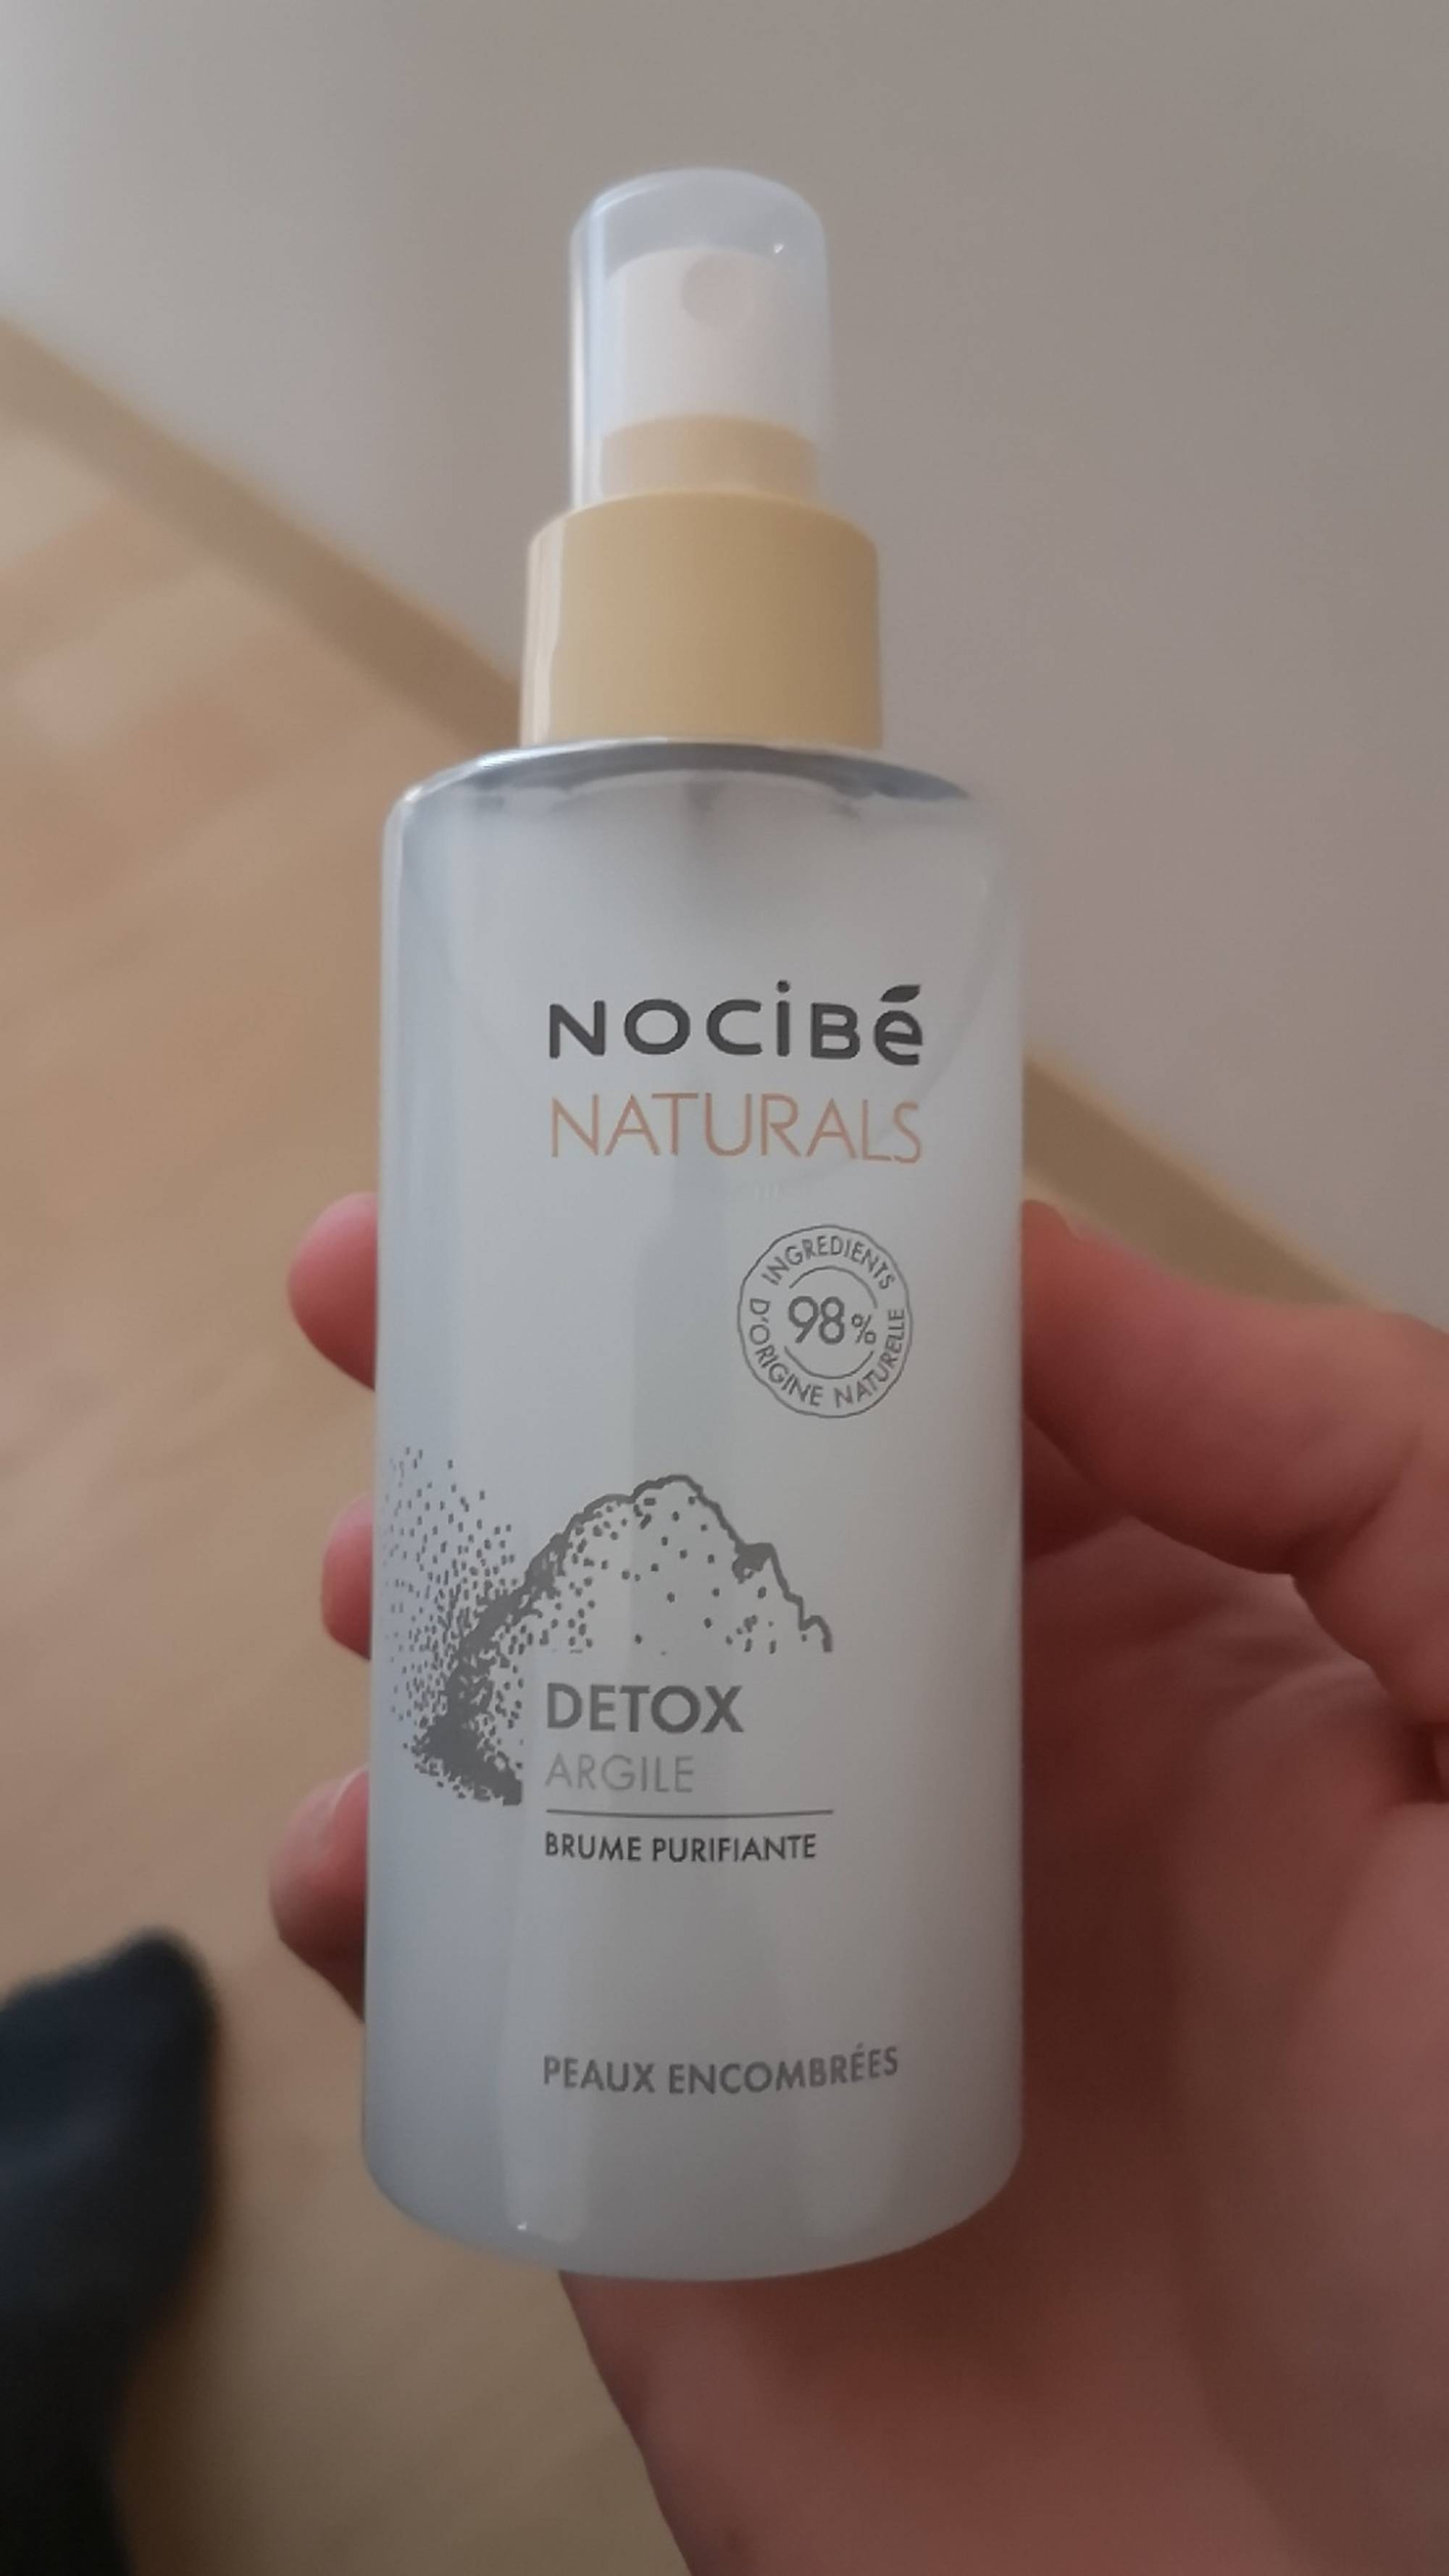 NOCIBÉ - Naturals detox argile - Brume purifiante 